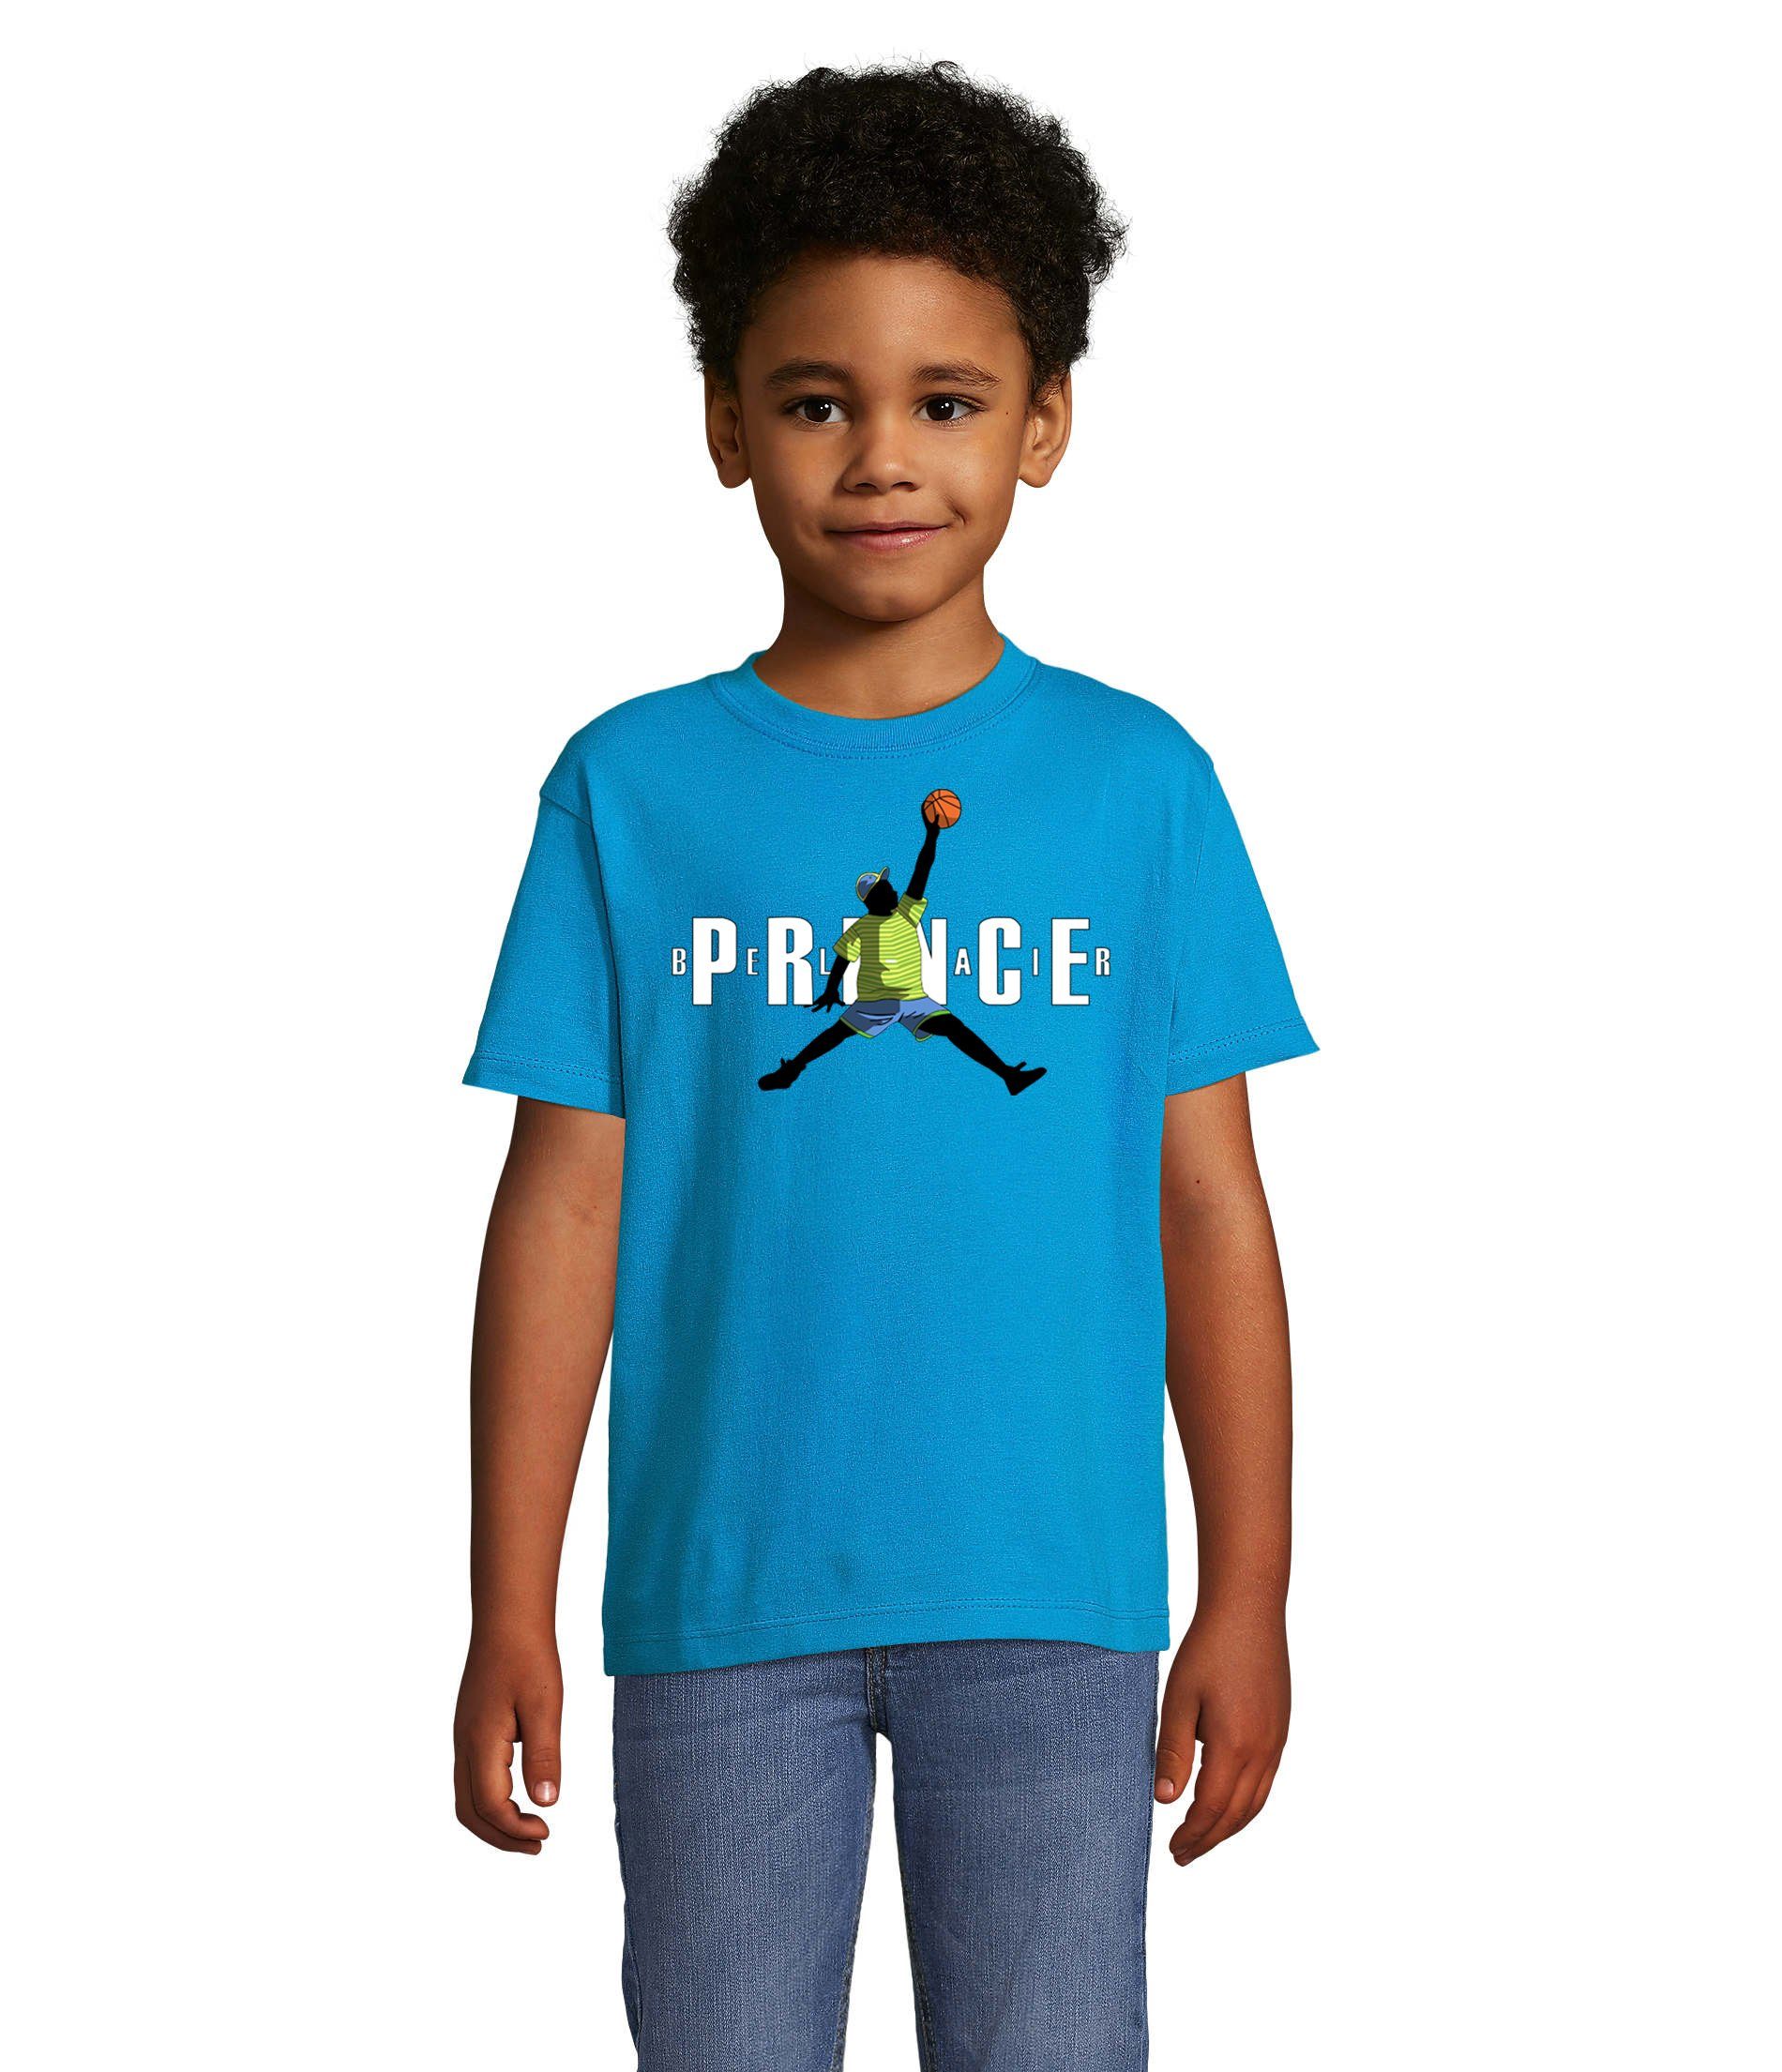 Blondie & Brownie T-Shirt Kinder vielen Basketball Farben Blau Prince in & Jungen Mädchen Fresh Air Bel